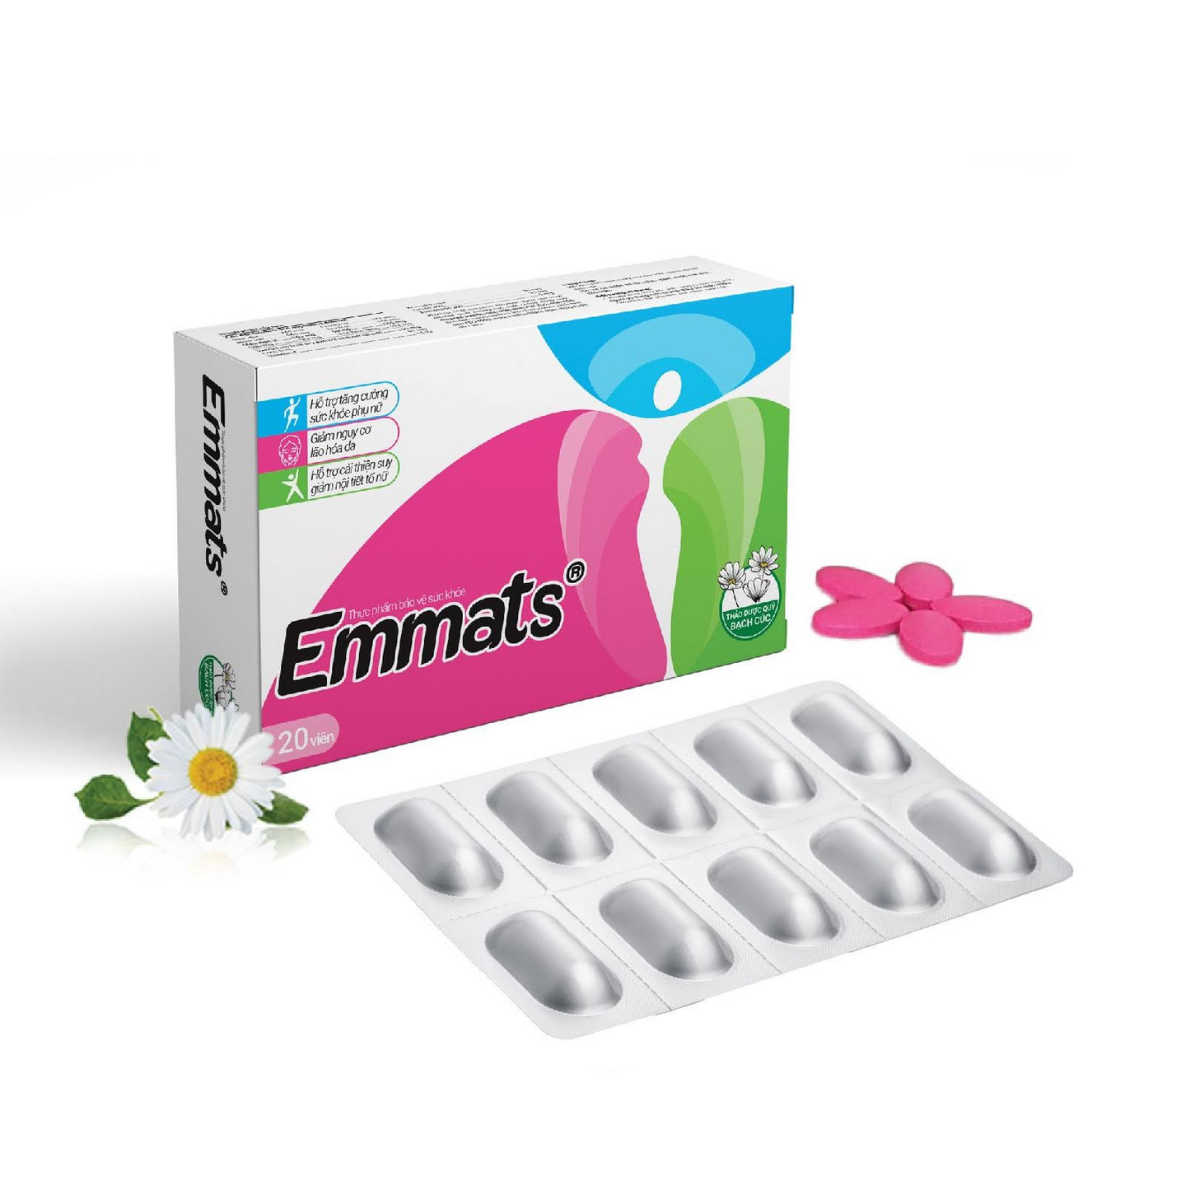 Viên uống Emmats hỗ trợ cải thiện suy giảm nội tiết tố nữ (Hộp 20 viên)